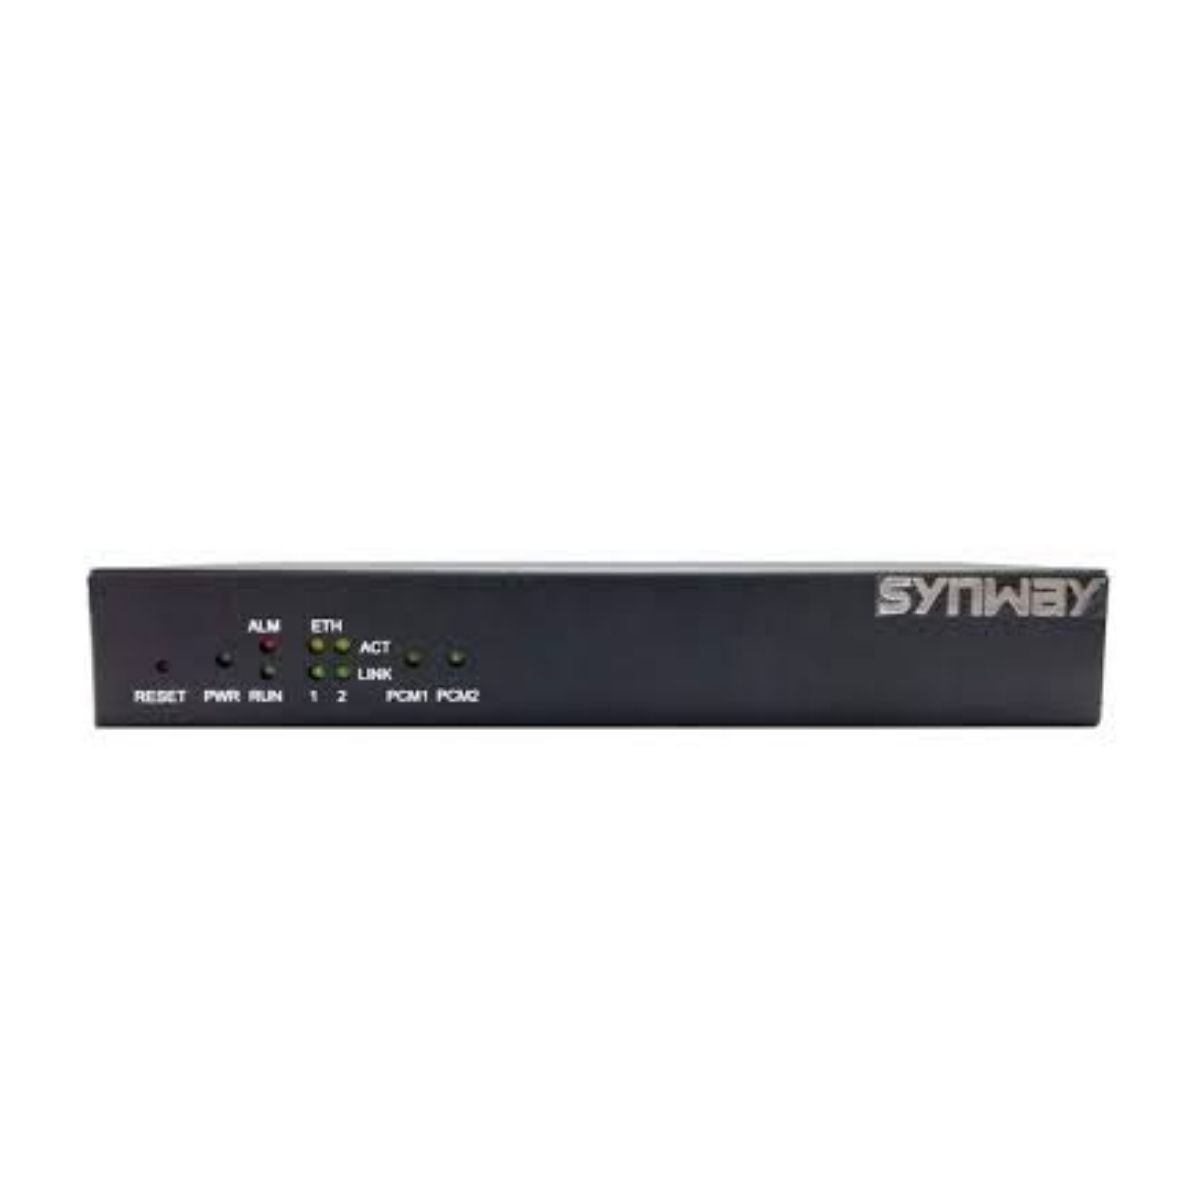 Gateway 1 luồng E1 – ISDN 30 kênh Synway SMG2030L